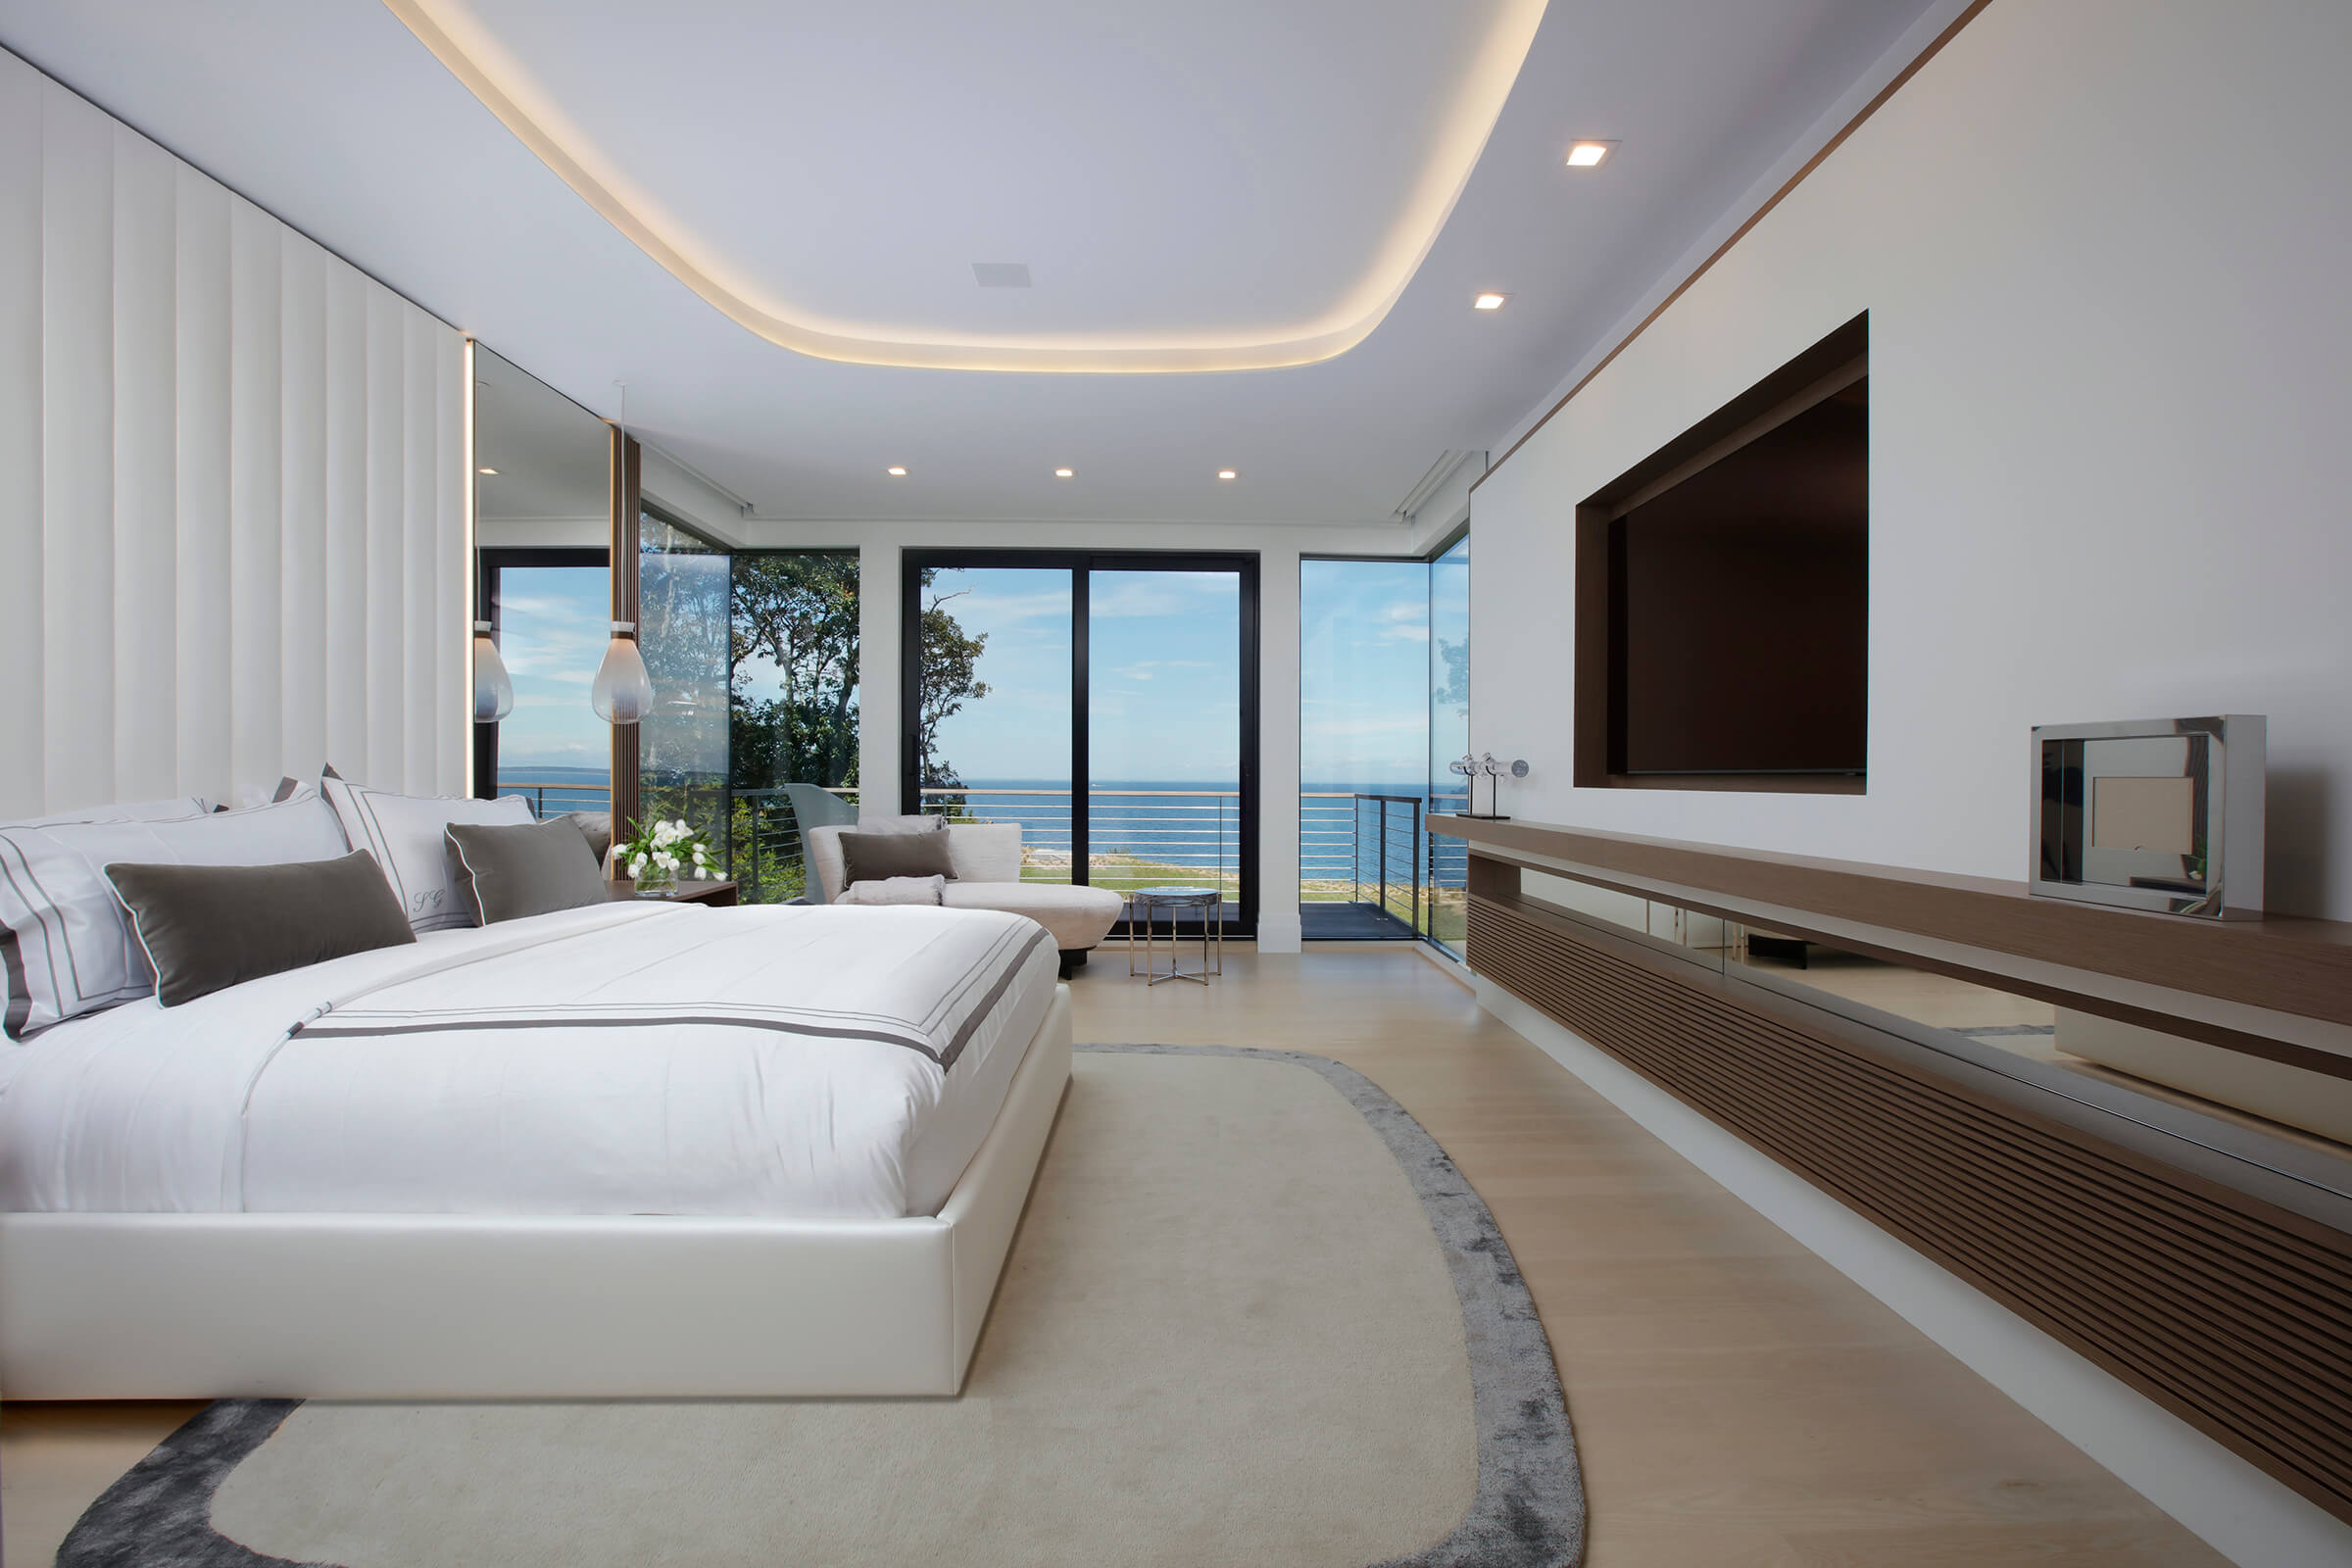 Best Bedroom Interior Design by Britto Charette Interior Designer, Miami Florida